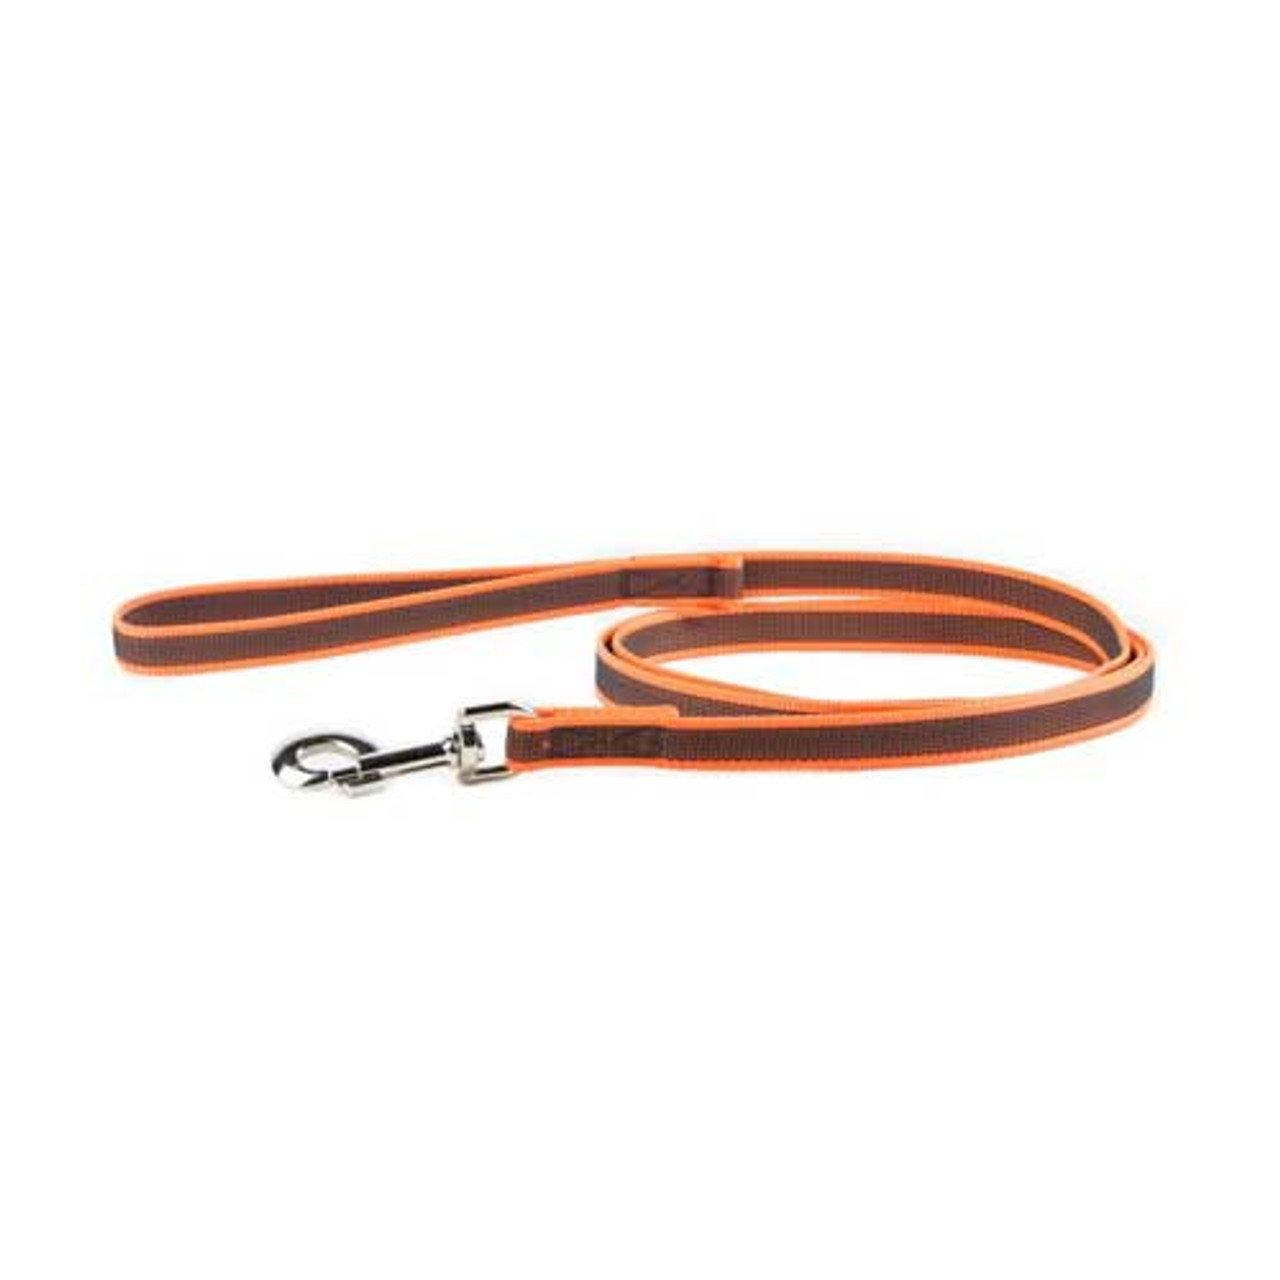 Julius-K9 Color & Grey Super-Grip Leash Orange-Grey Width (0.7"/ 20mm) Length (6.5ft / 2 m) With Handle , Max for 110lb/ 50 kg Dog